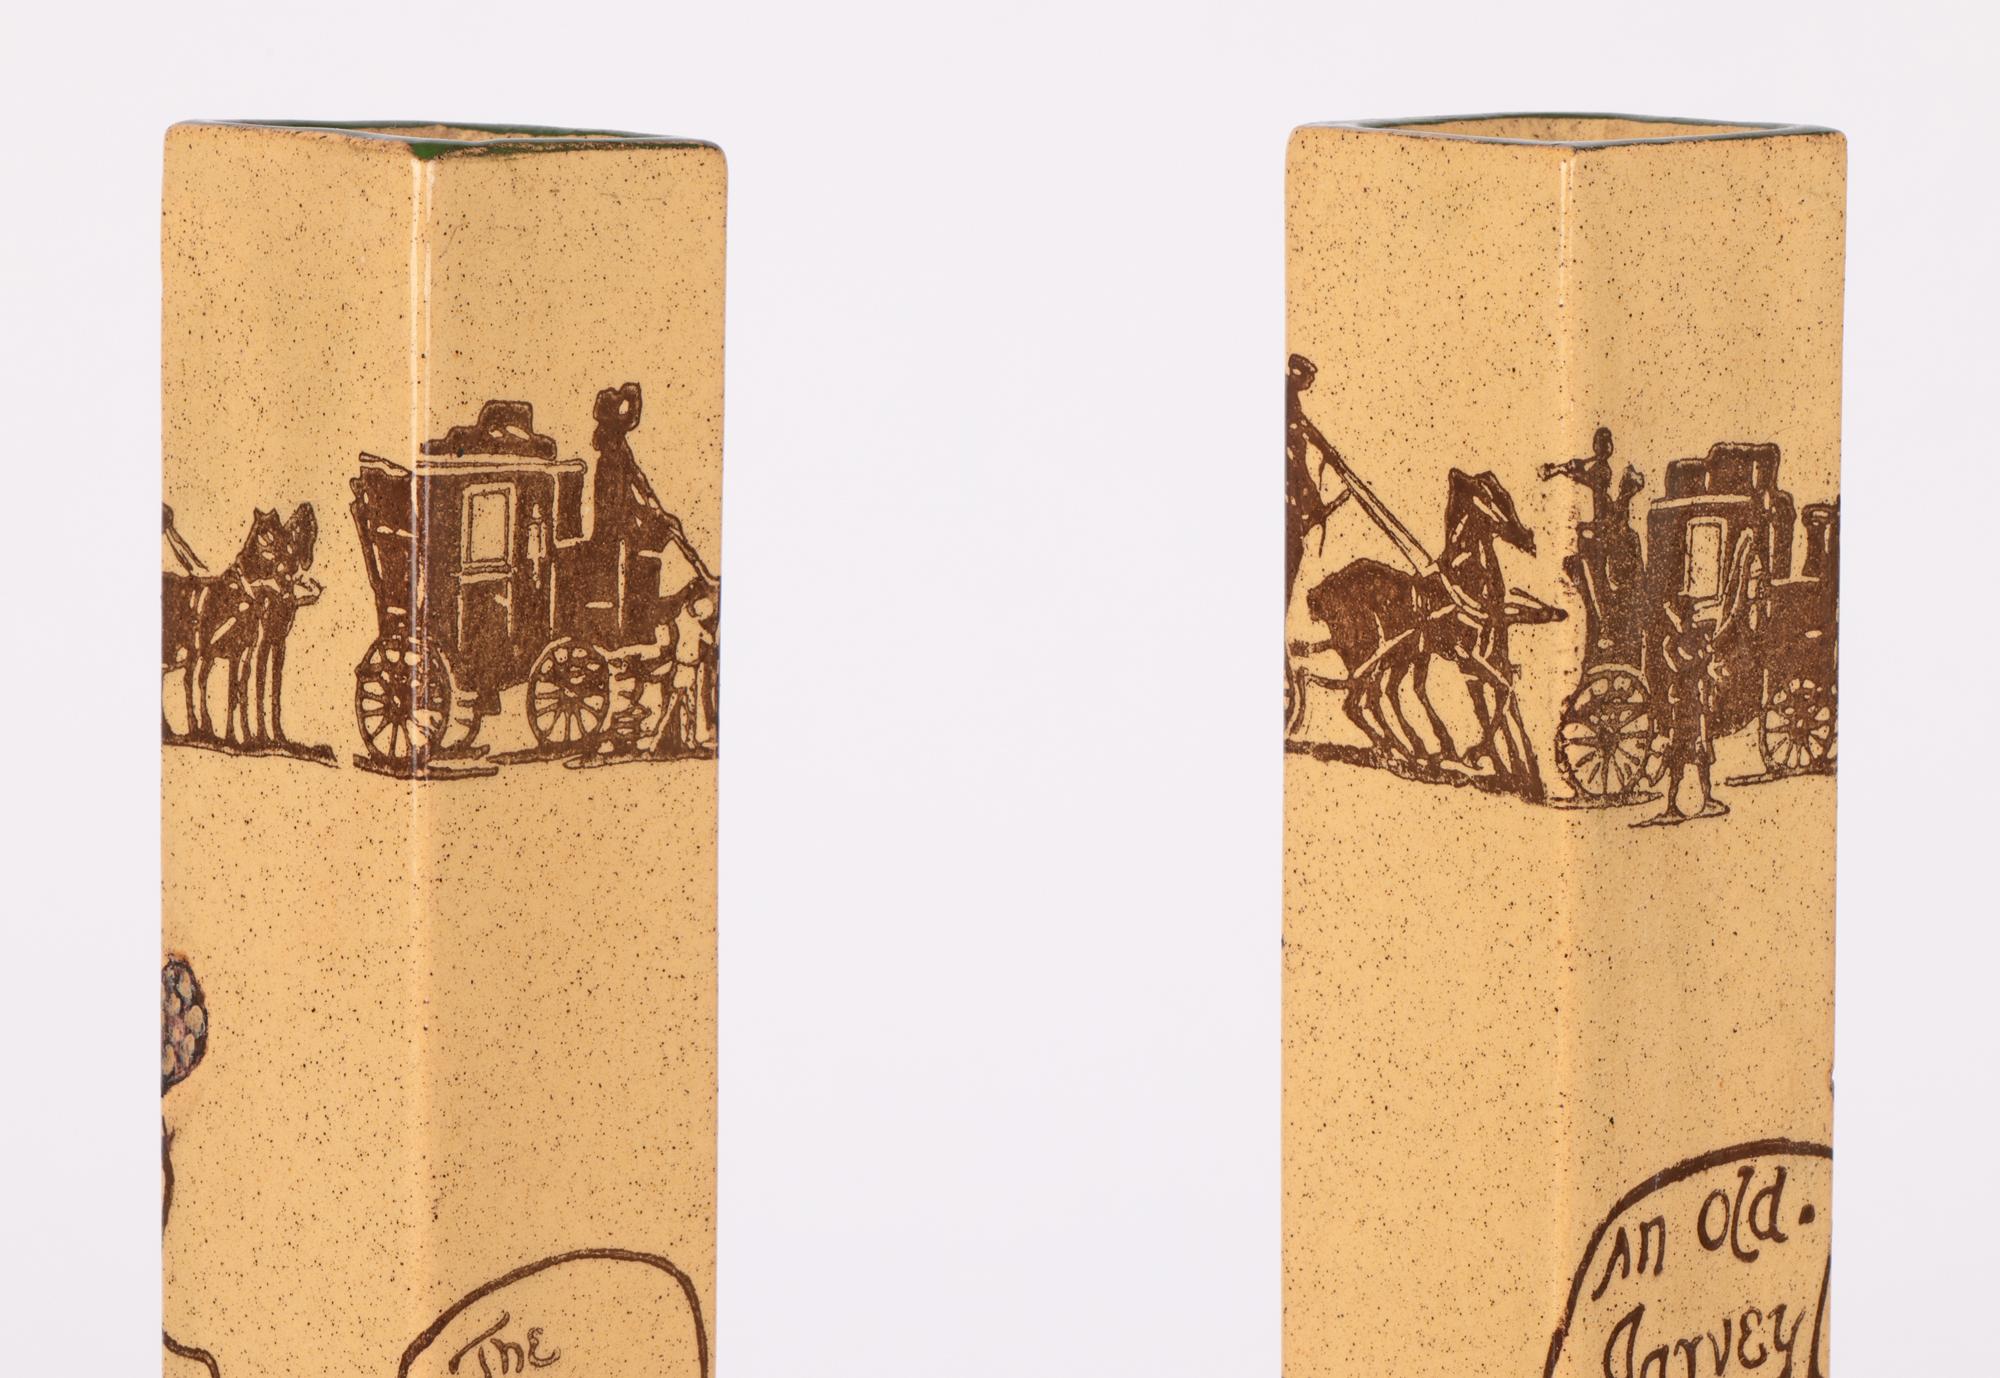 Une paire rare et très inhabituelle de vases en poterie d'art Doulton Burslem Coaching datant d'environ 1909. Les vases en terre cuite ont la forme d'une grande colonne carrée reposant sur une large plate-forme carrée et sont décorés de deux cochers